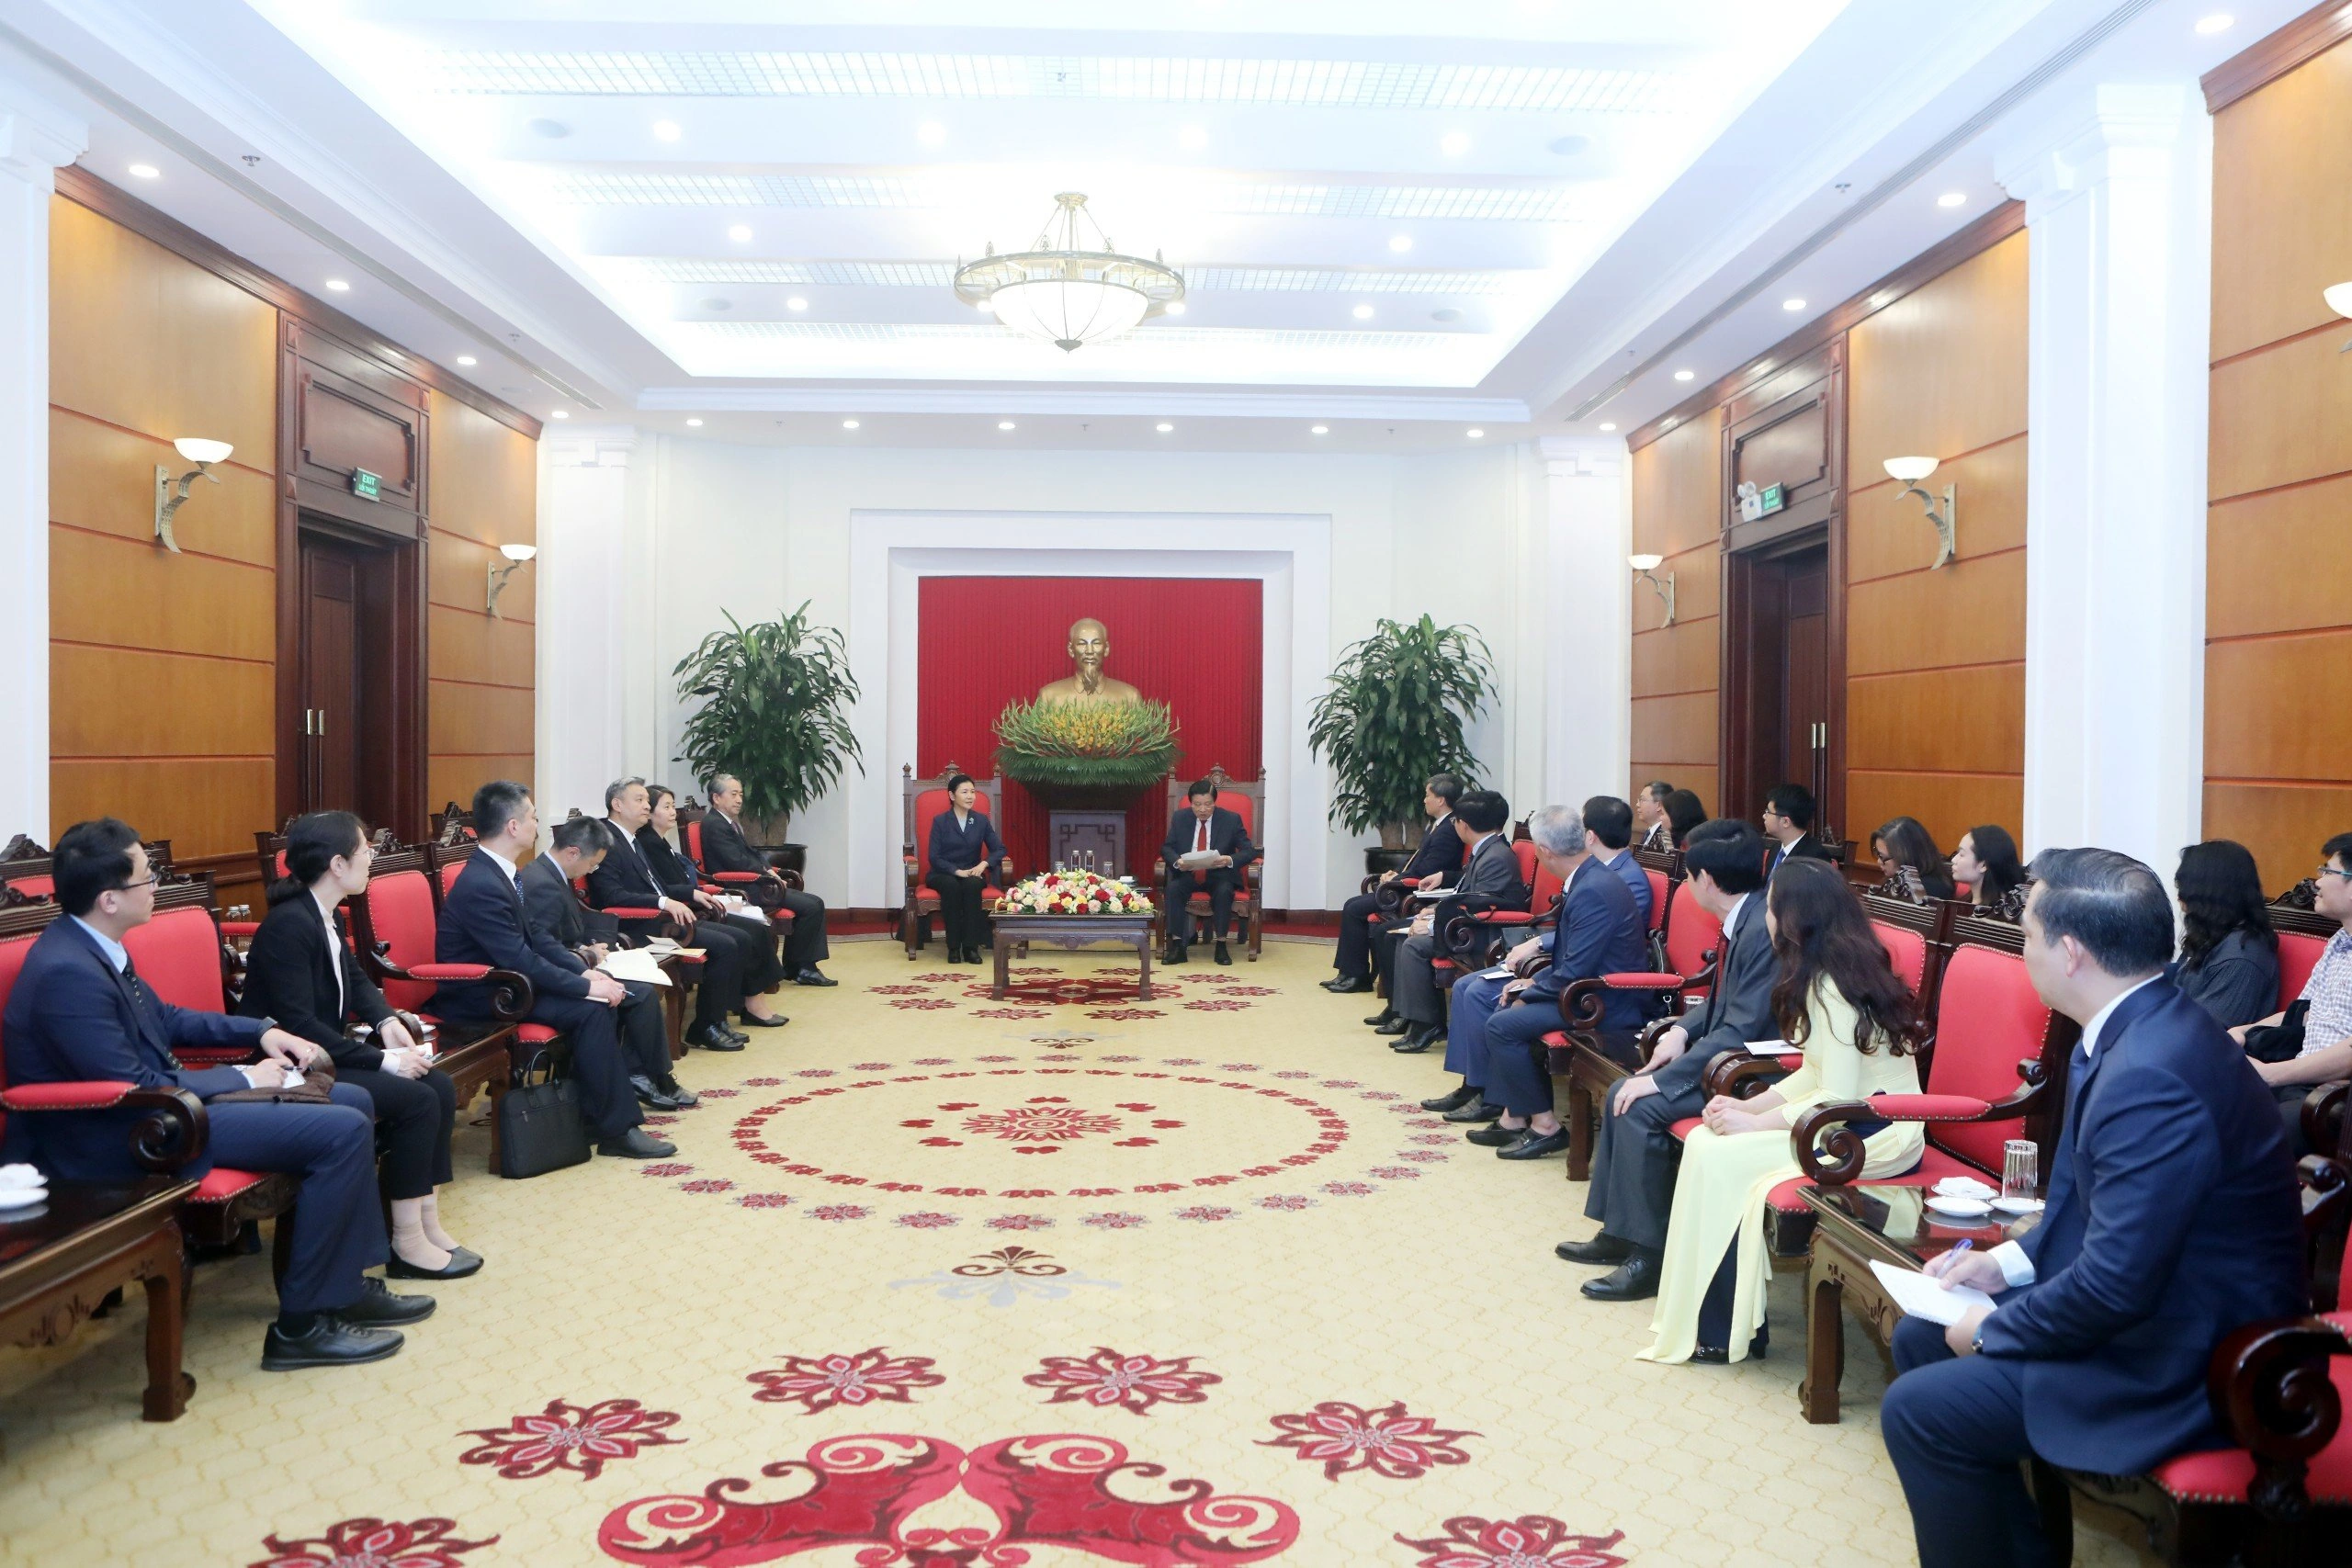 Trưởng Ban Nội chính Trung ương Phan Đình Trạc hoan nghênh chuyến thăm của Đoàn đại biểu Bộ Tư pháp Trung Quốc đến Việt Nam(Ảnh: Đặng Phước).